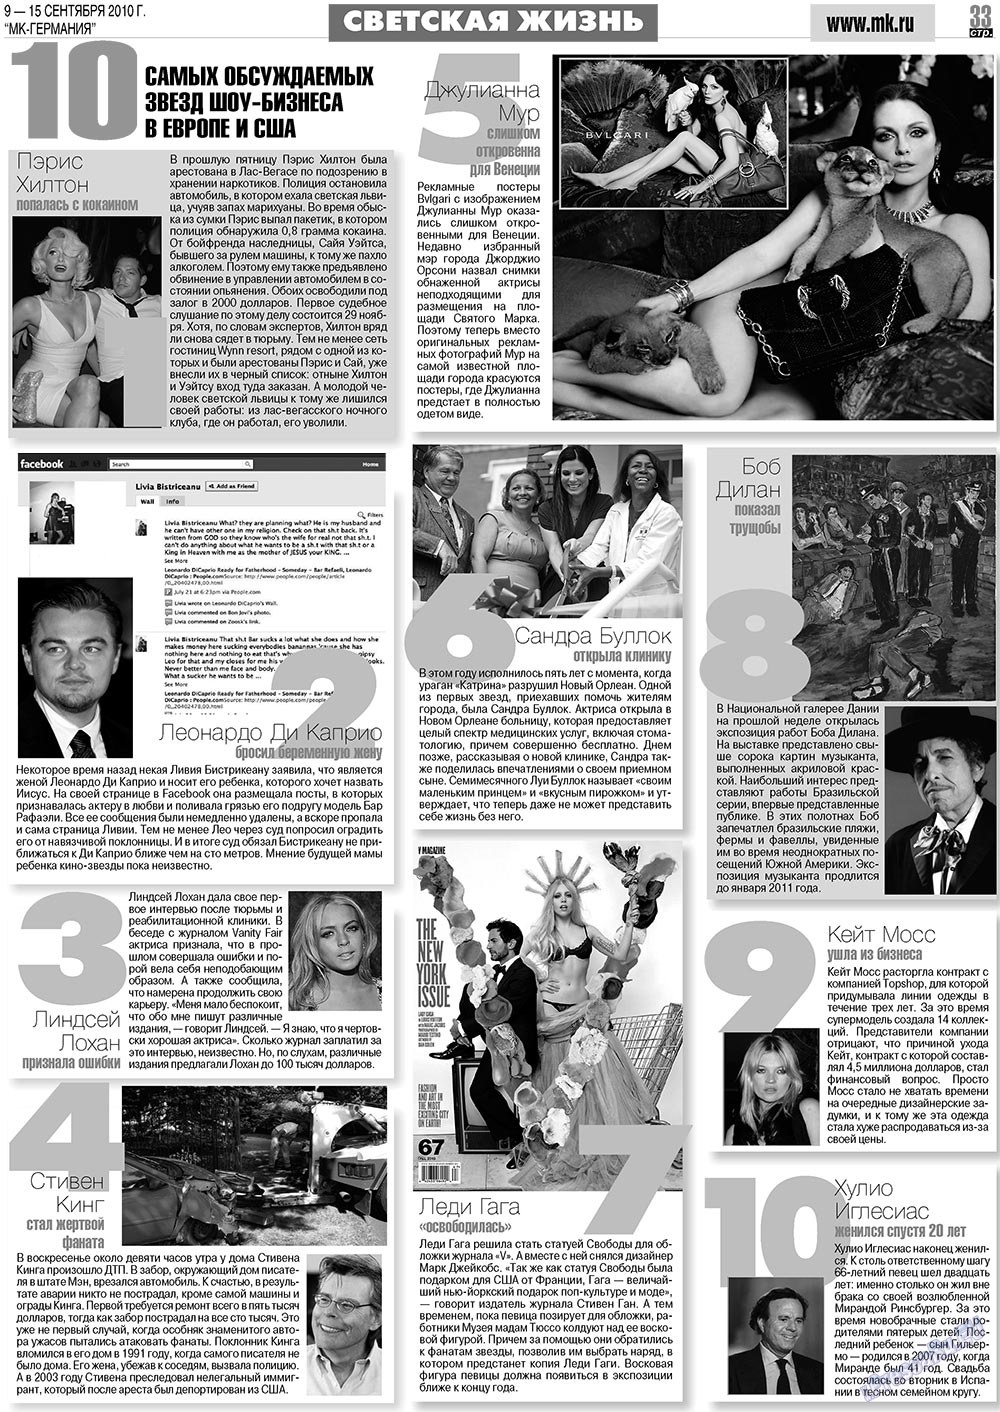 МК-Германия (газета). 2010 год, номер 37, стр. 33